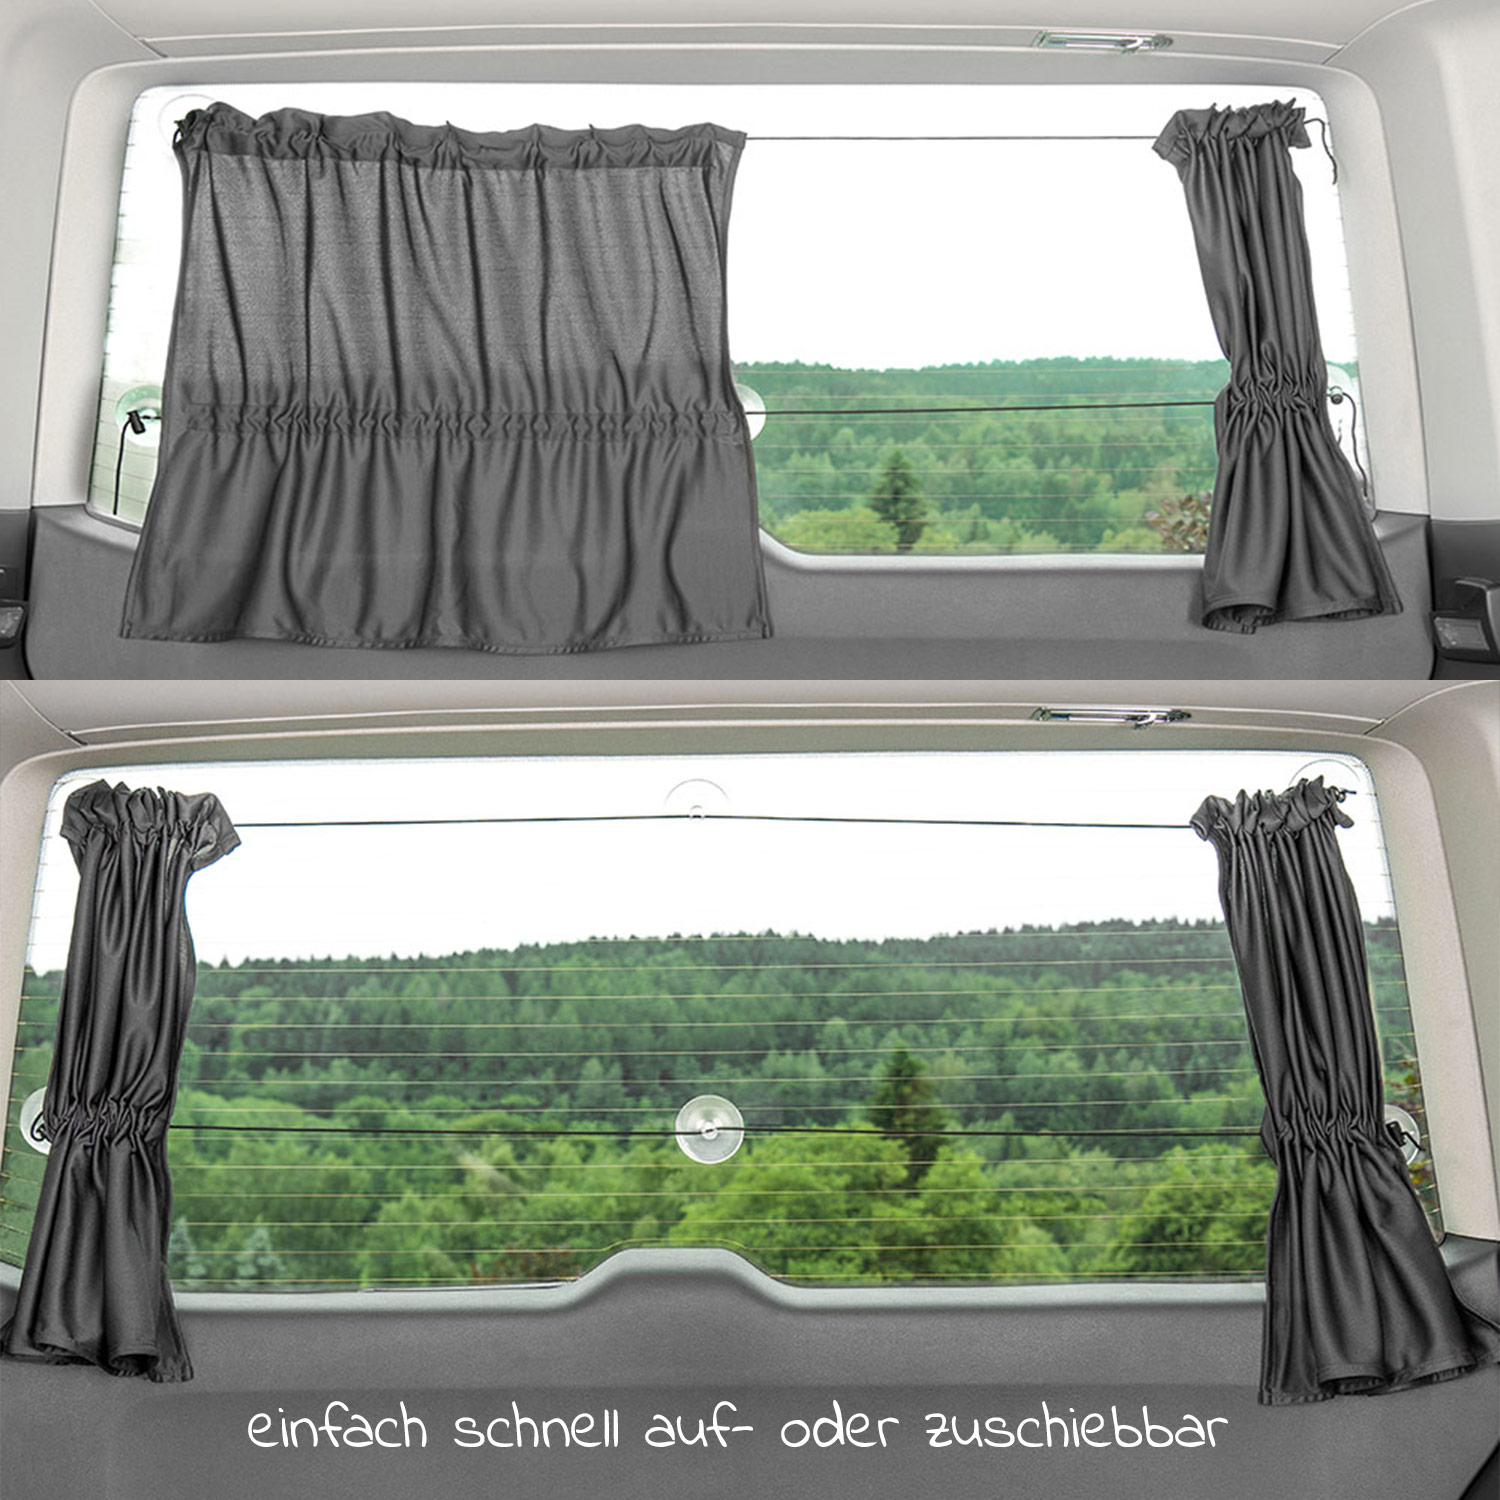 Zamboo 2x Sonnenschutz Vorhang für Seitenscheiben für Kleinbusse & Van Grau 